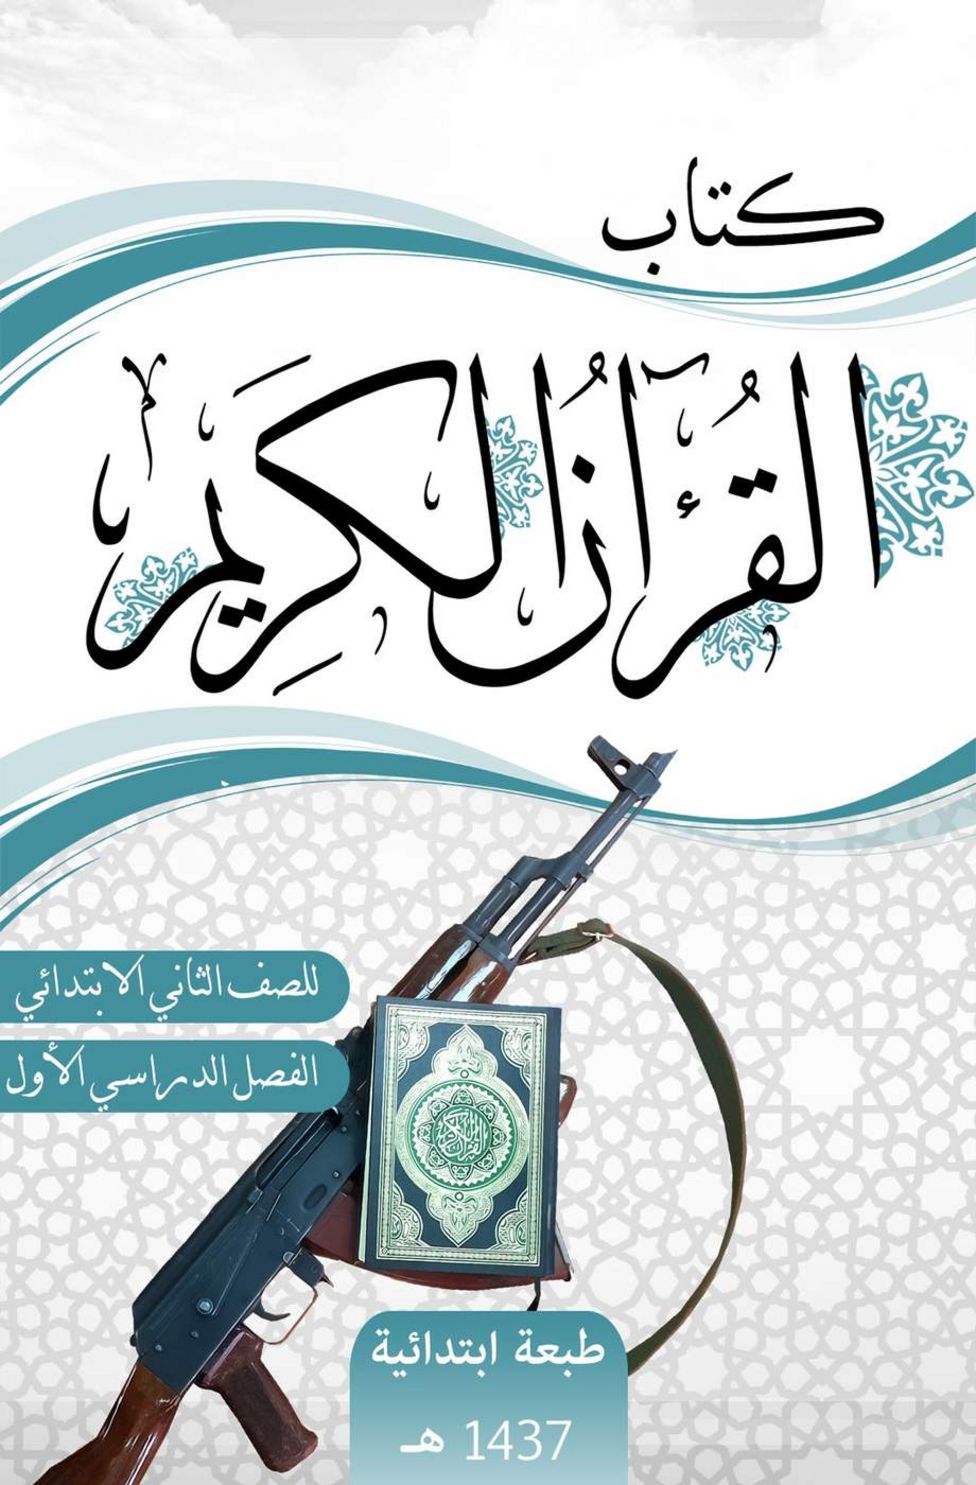 IŞİD ders kitabı: 'Kuran dersleri'